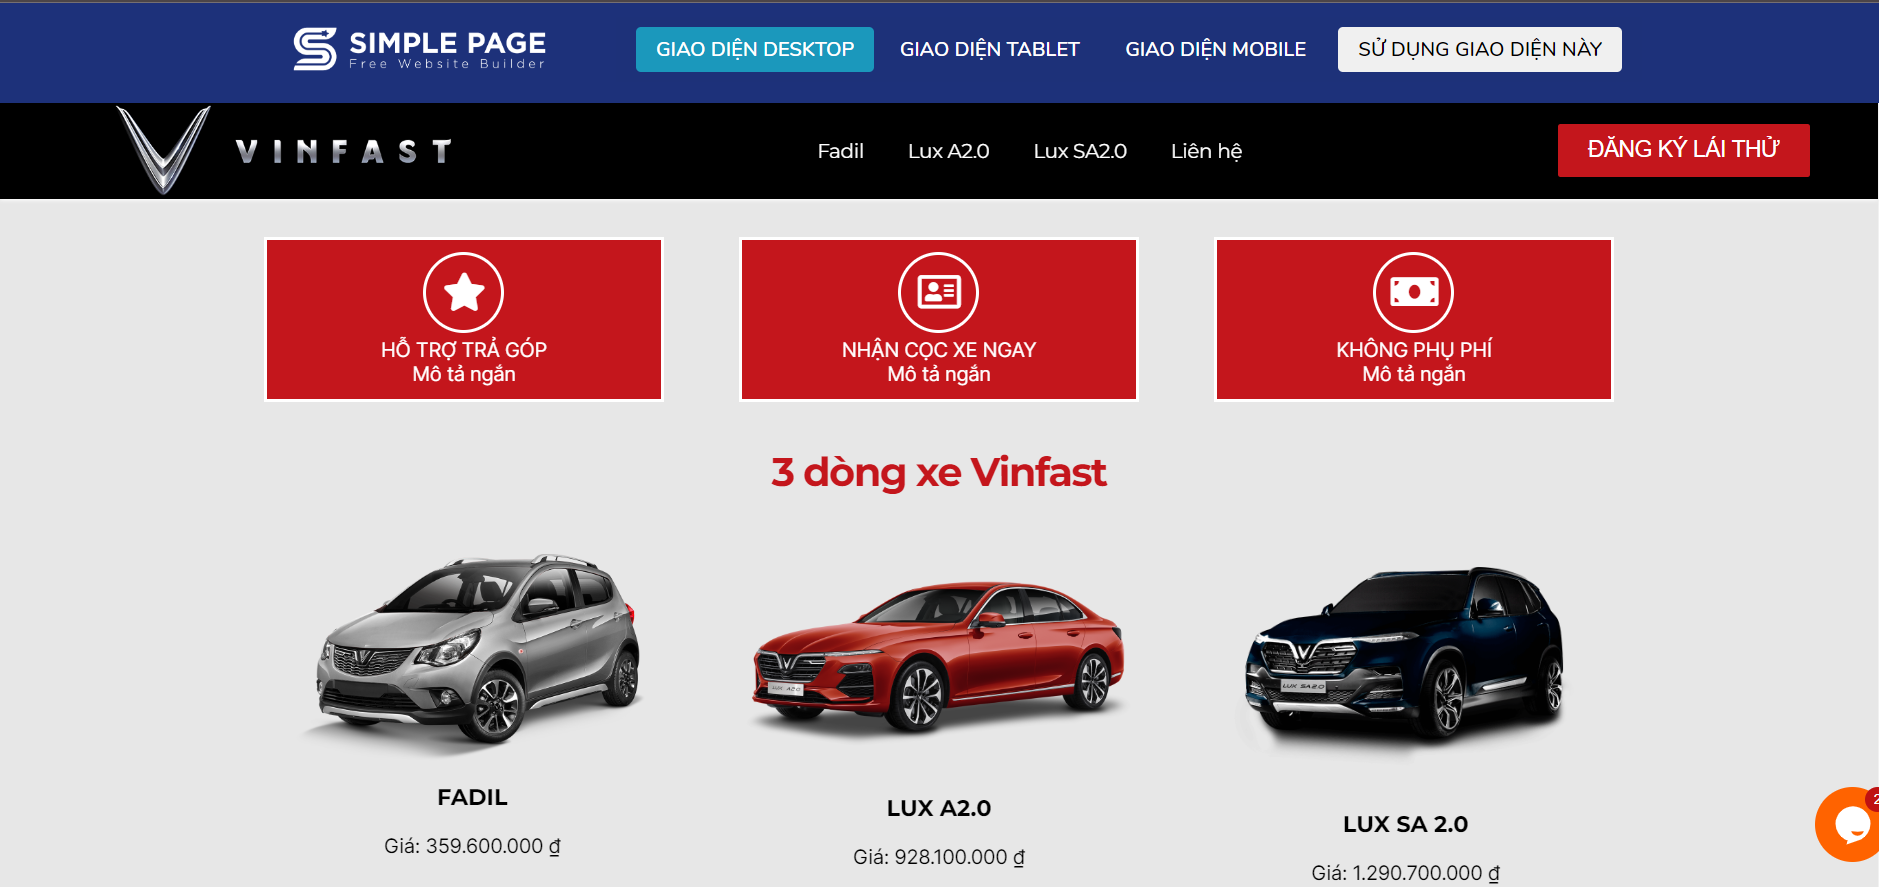 Marketing cho kinh doanh ô tô với Simple Page